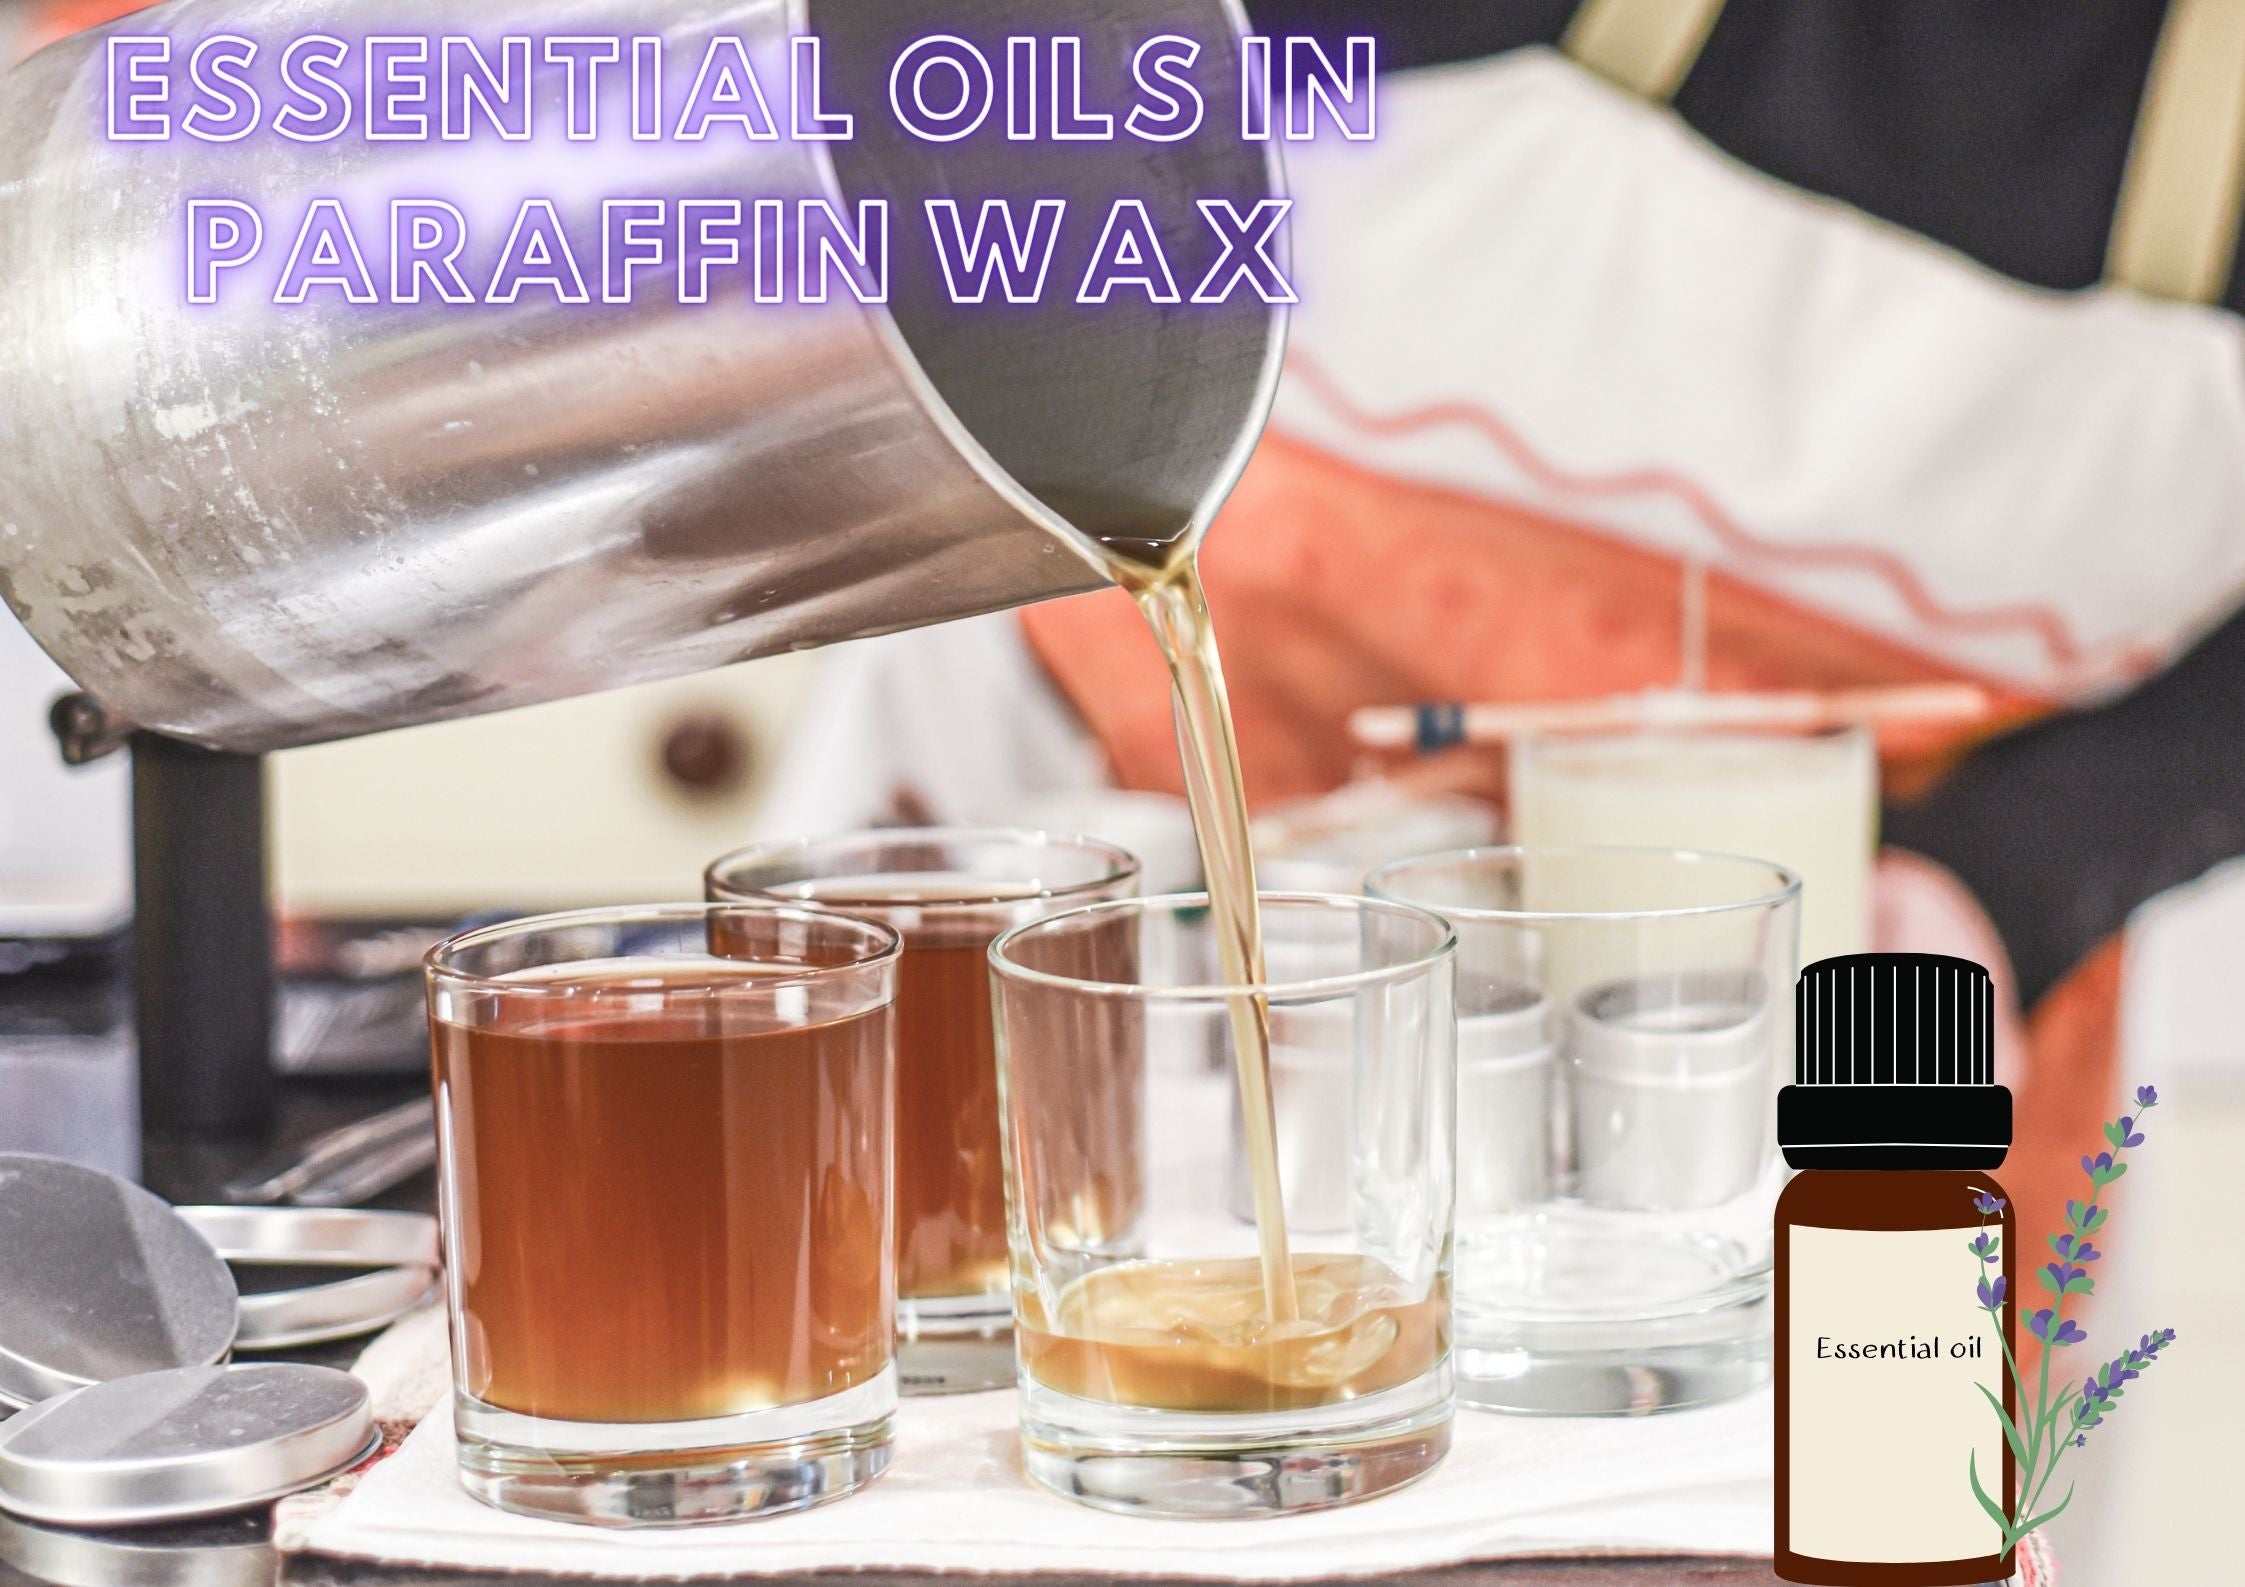 Essential oils in paraffin wax